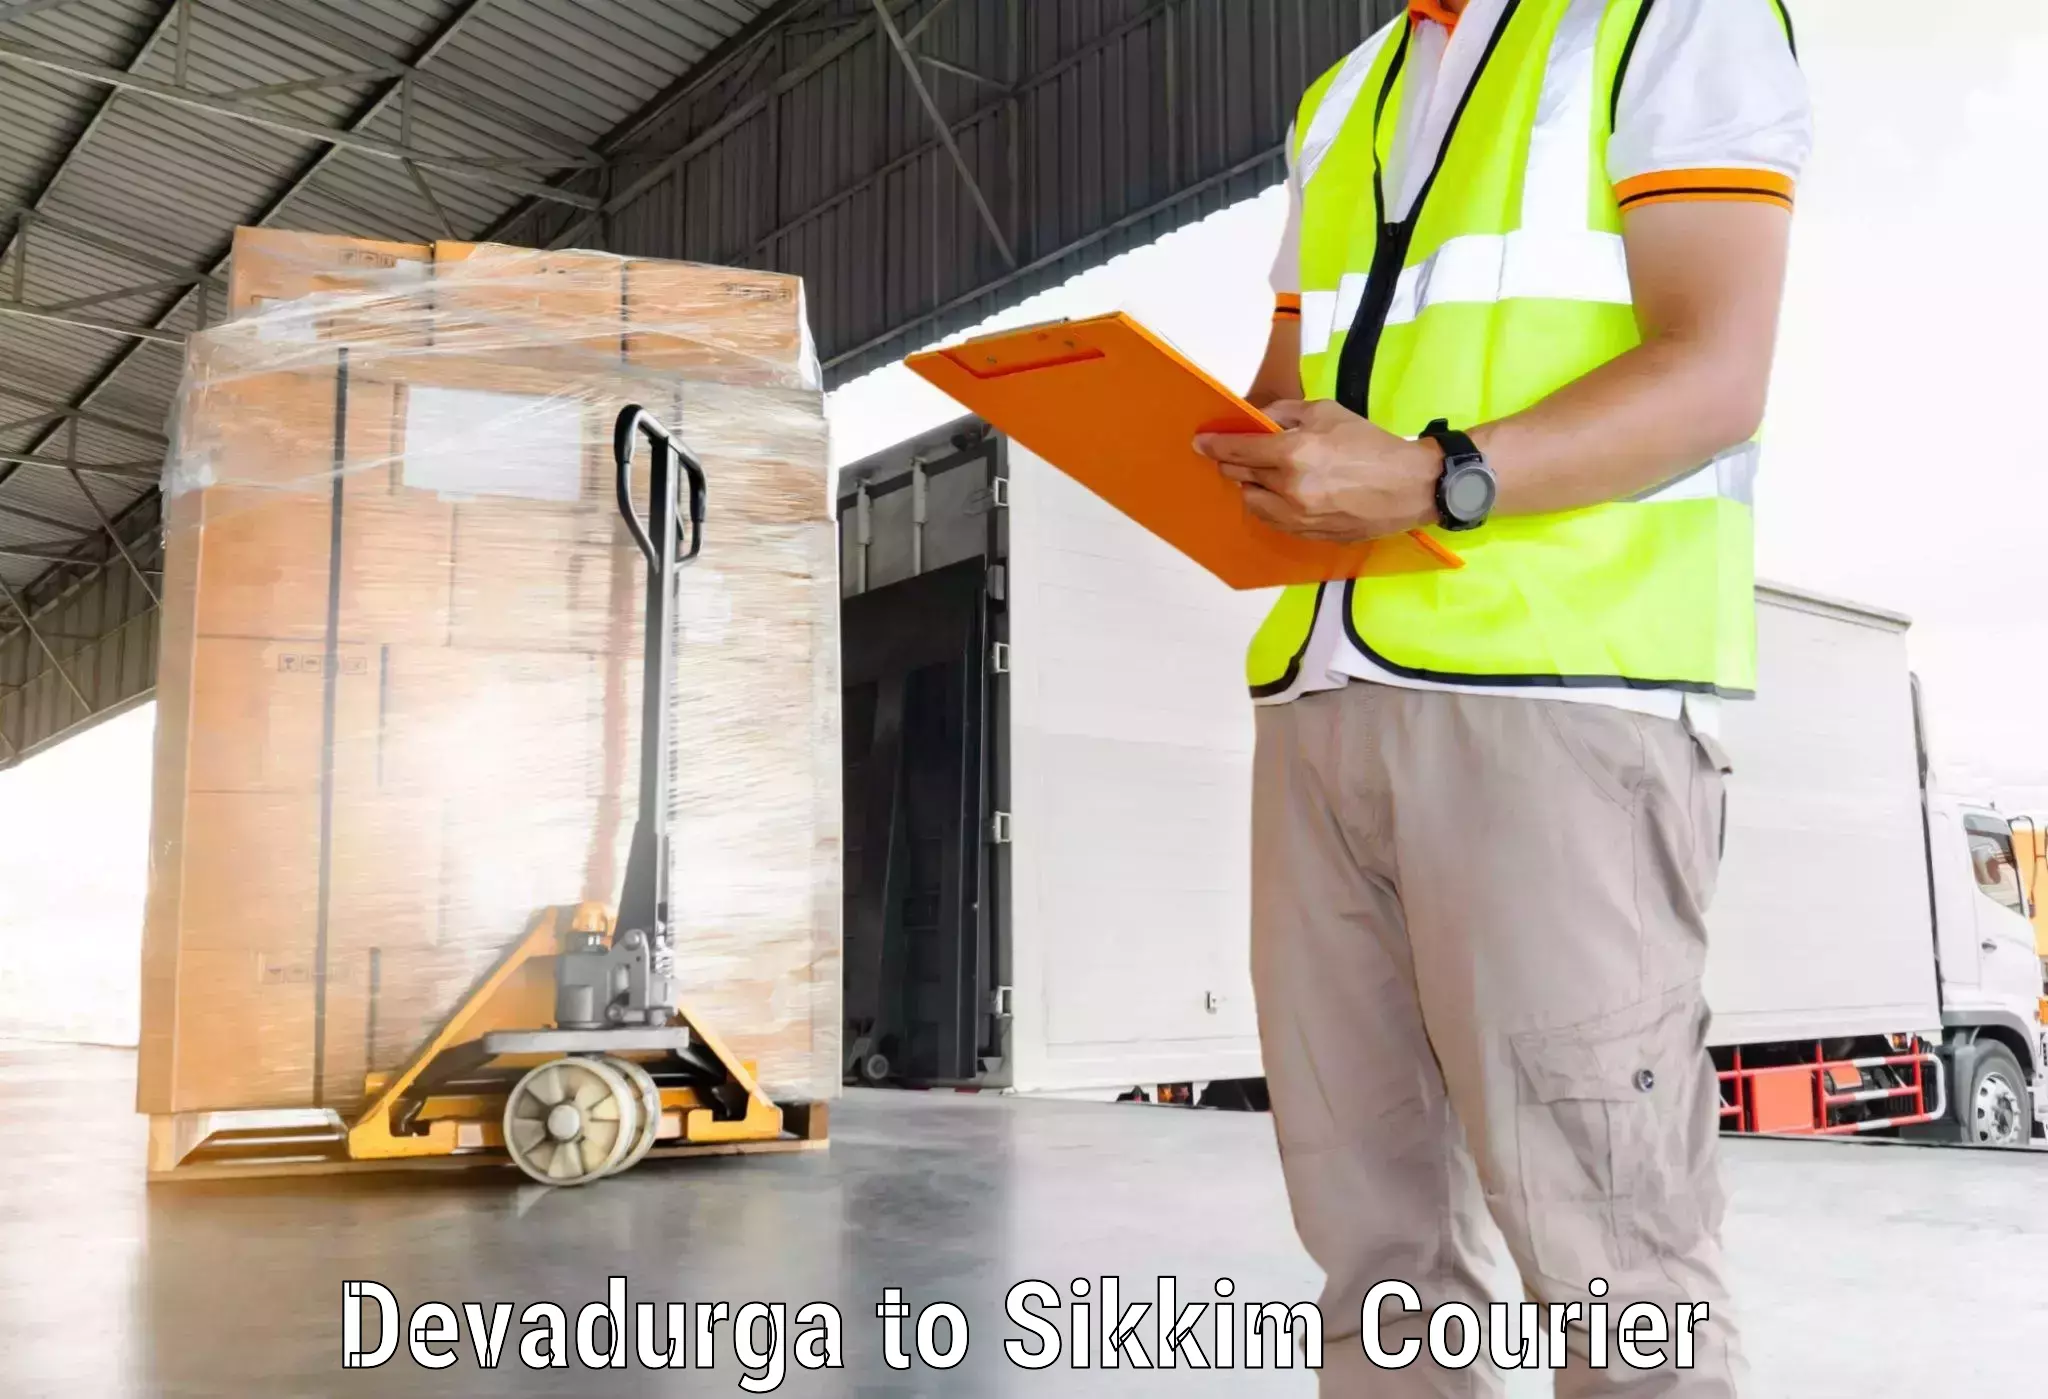 Express delivery capabilities Devadurga to Rangpo